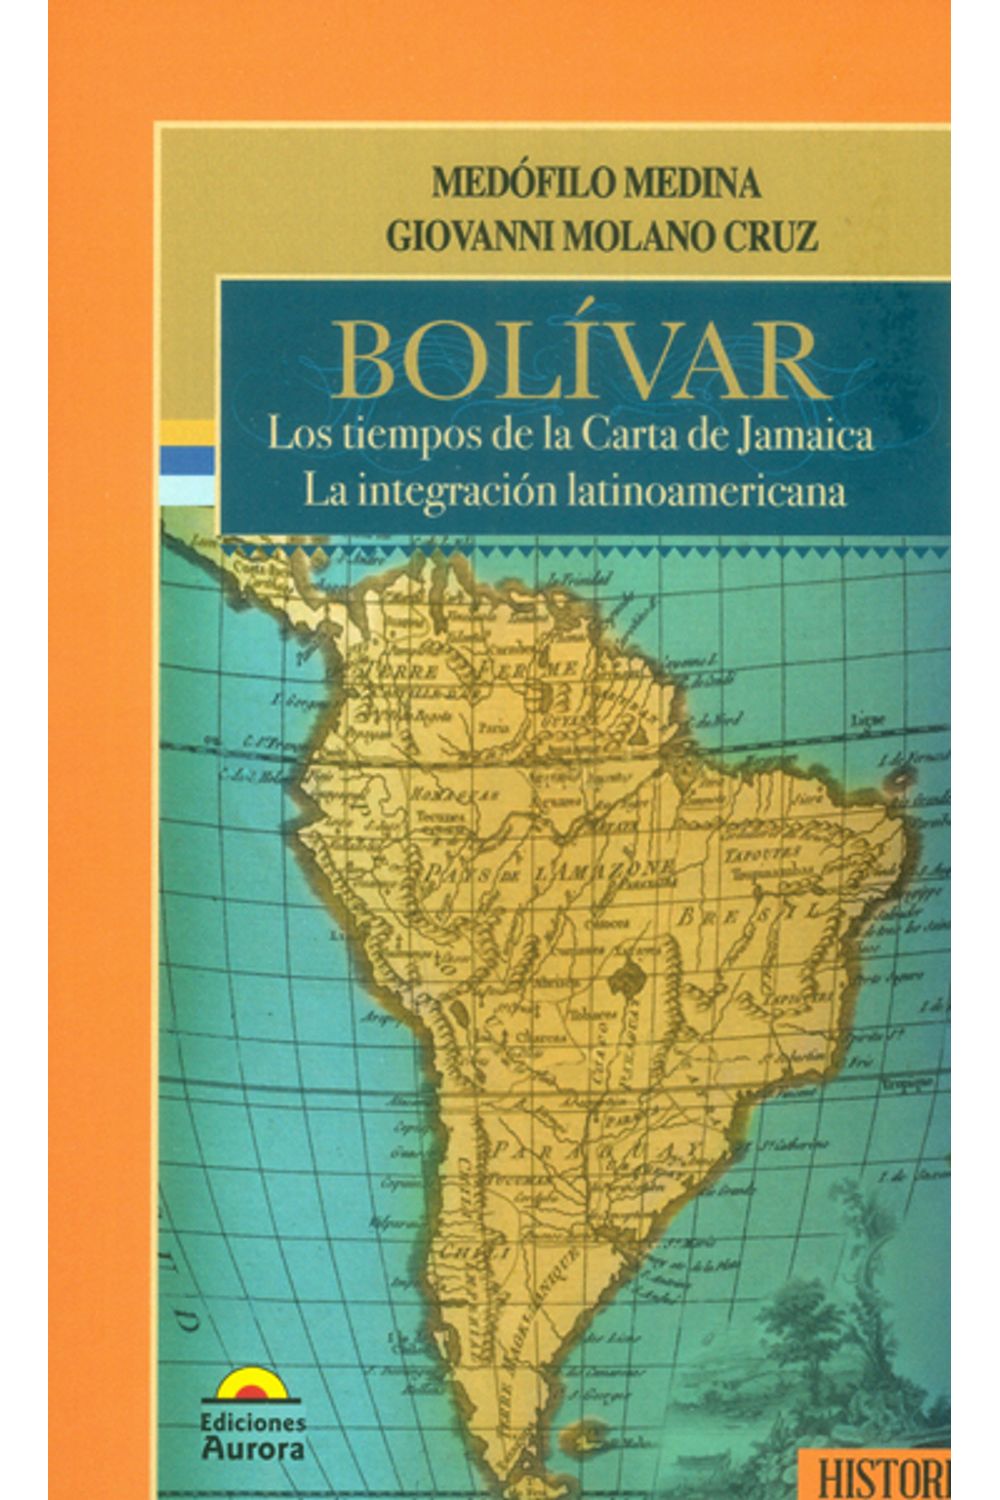 bolivar-los-tiempos-de-la-carta-de-jamaica-9789589136928-auro